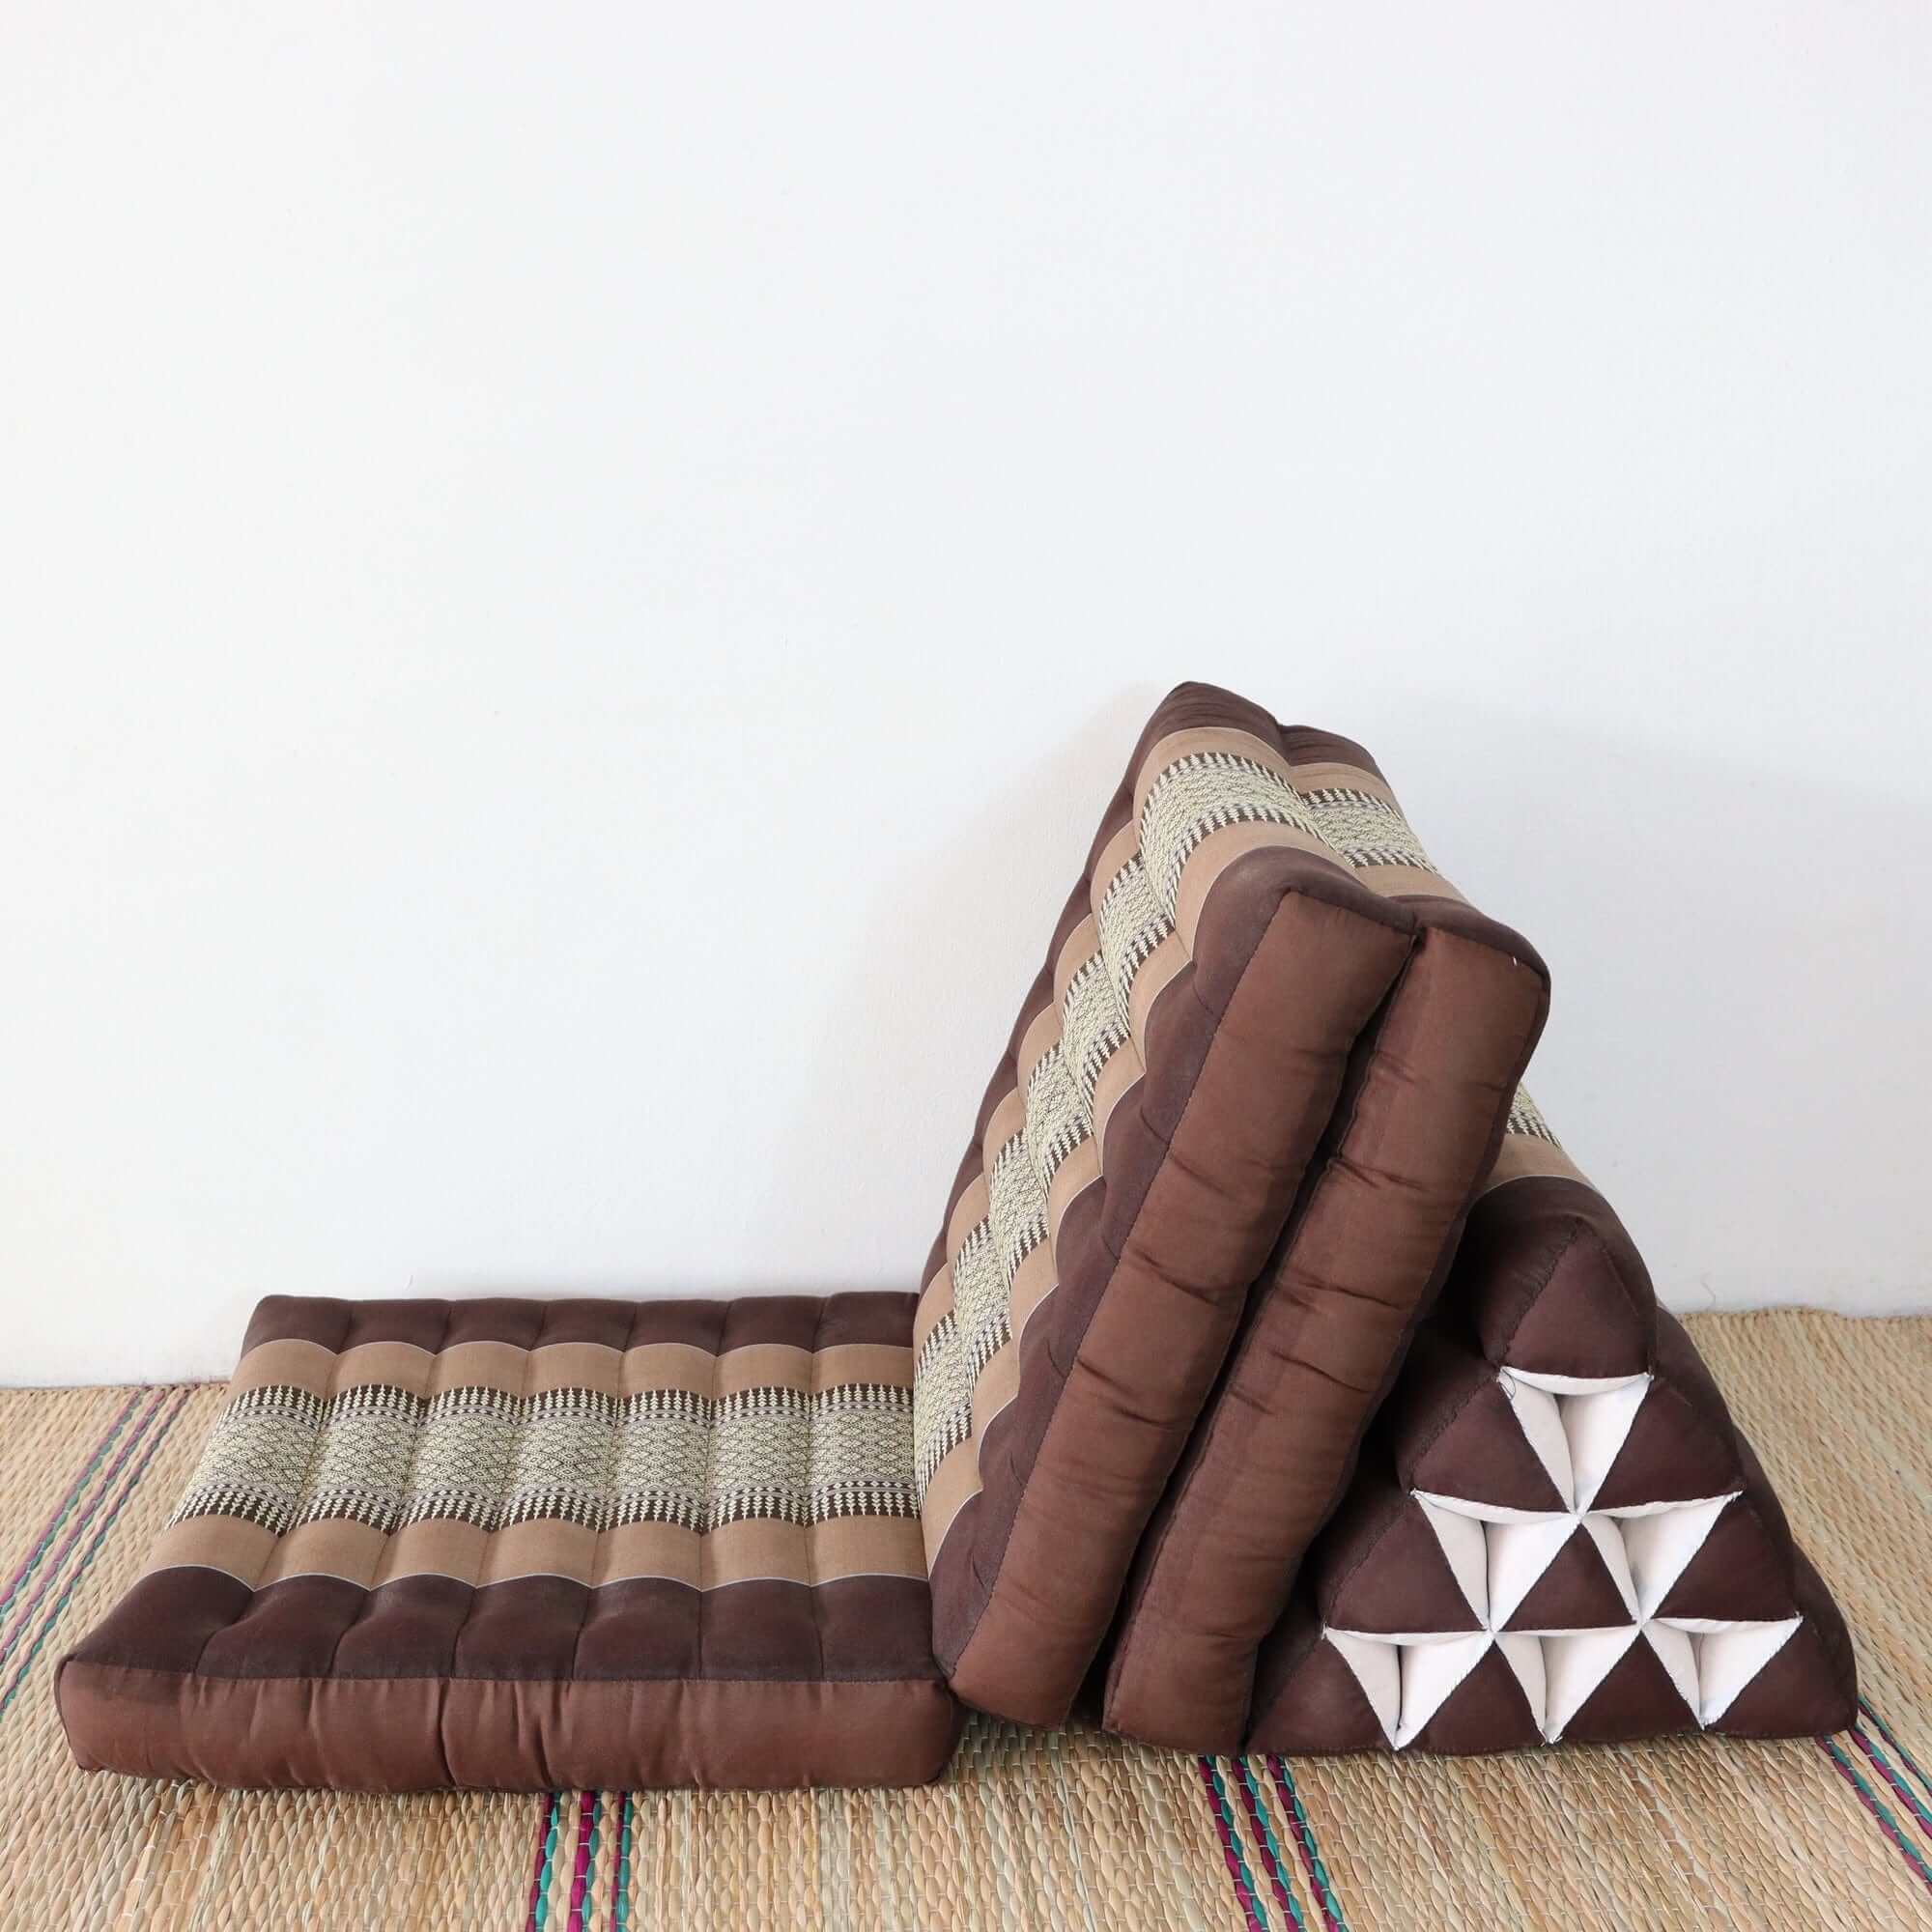 CAH KE YA - Thai Triangle 3 Fold Cushion